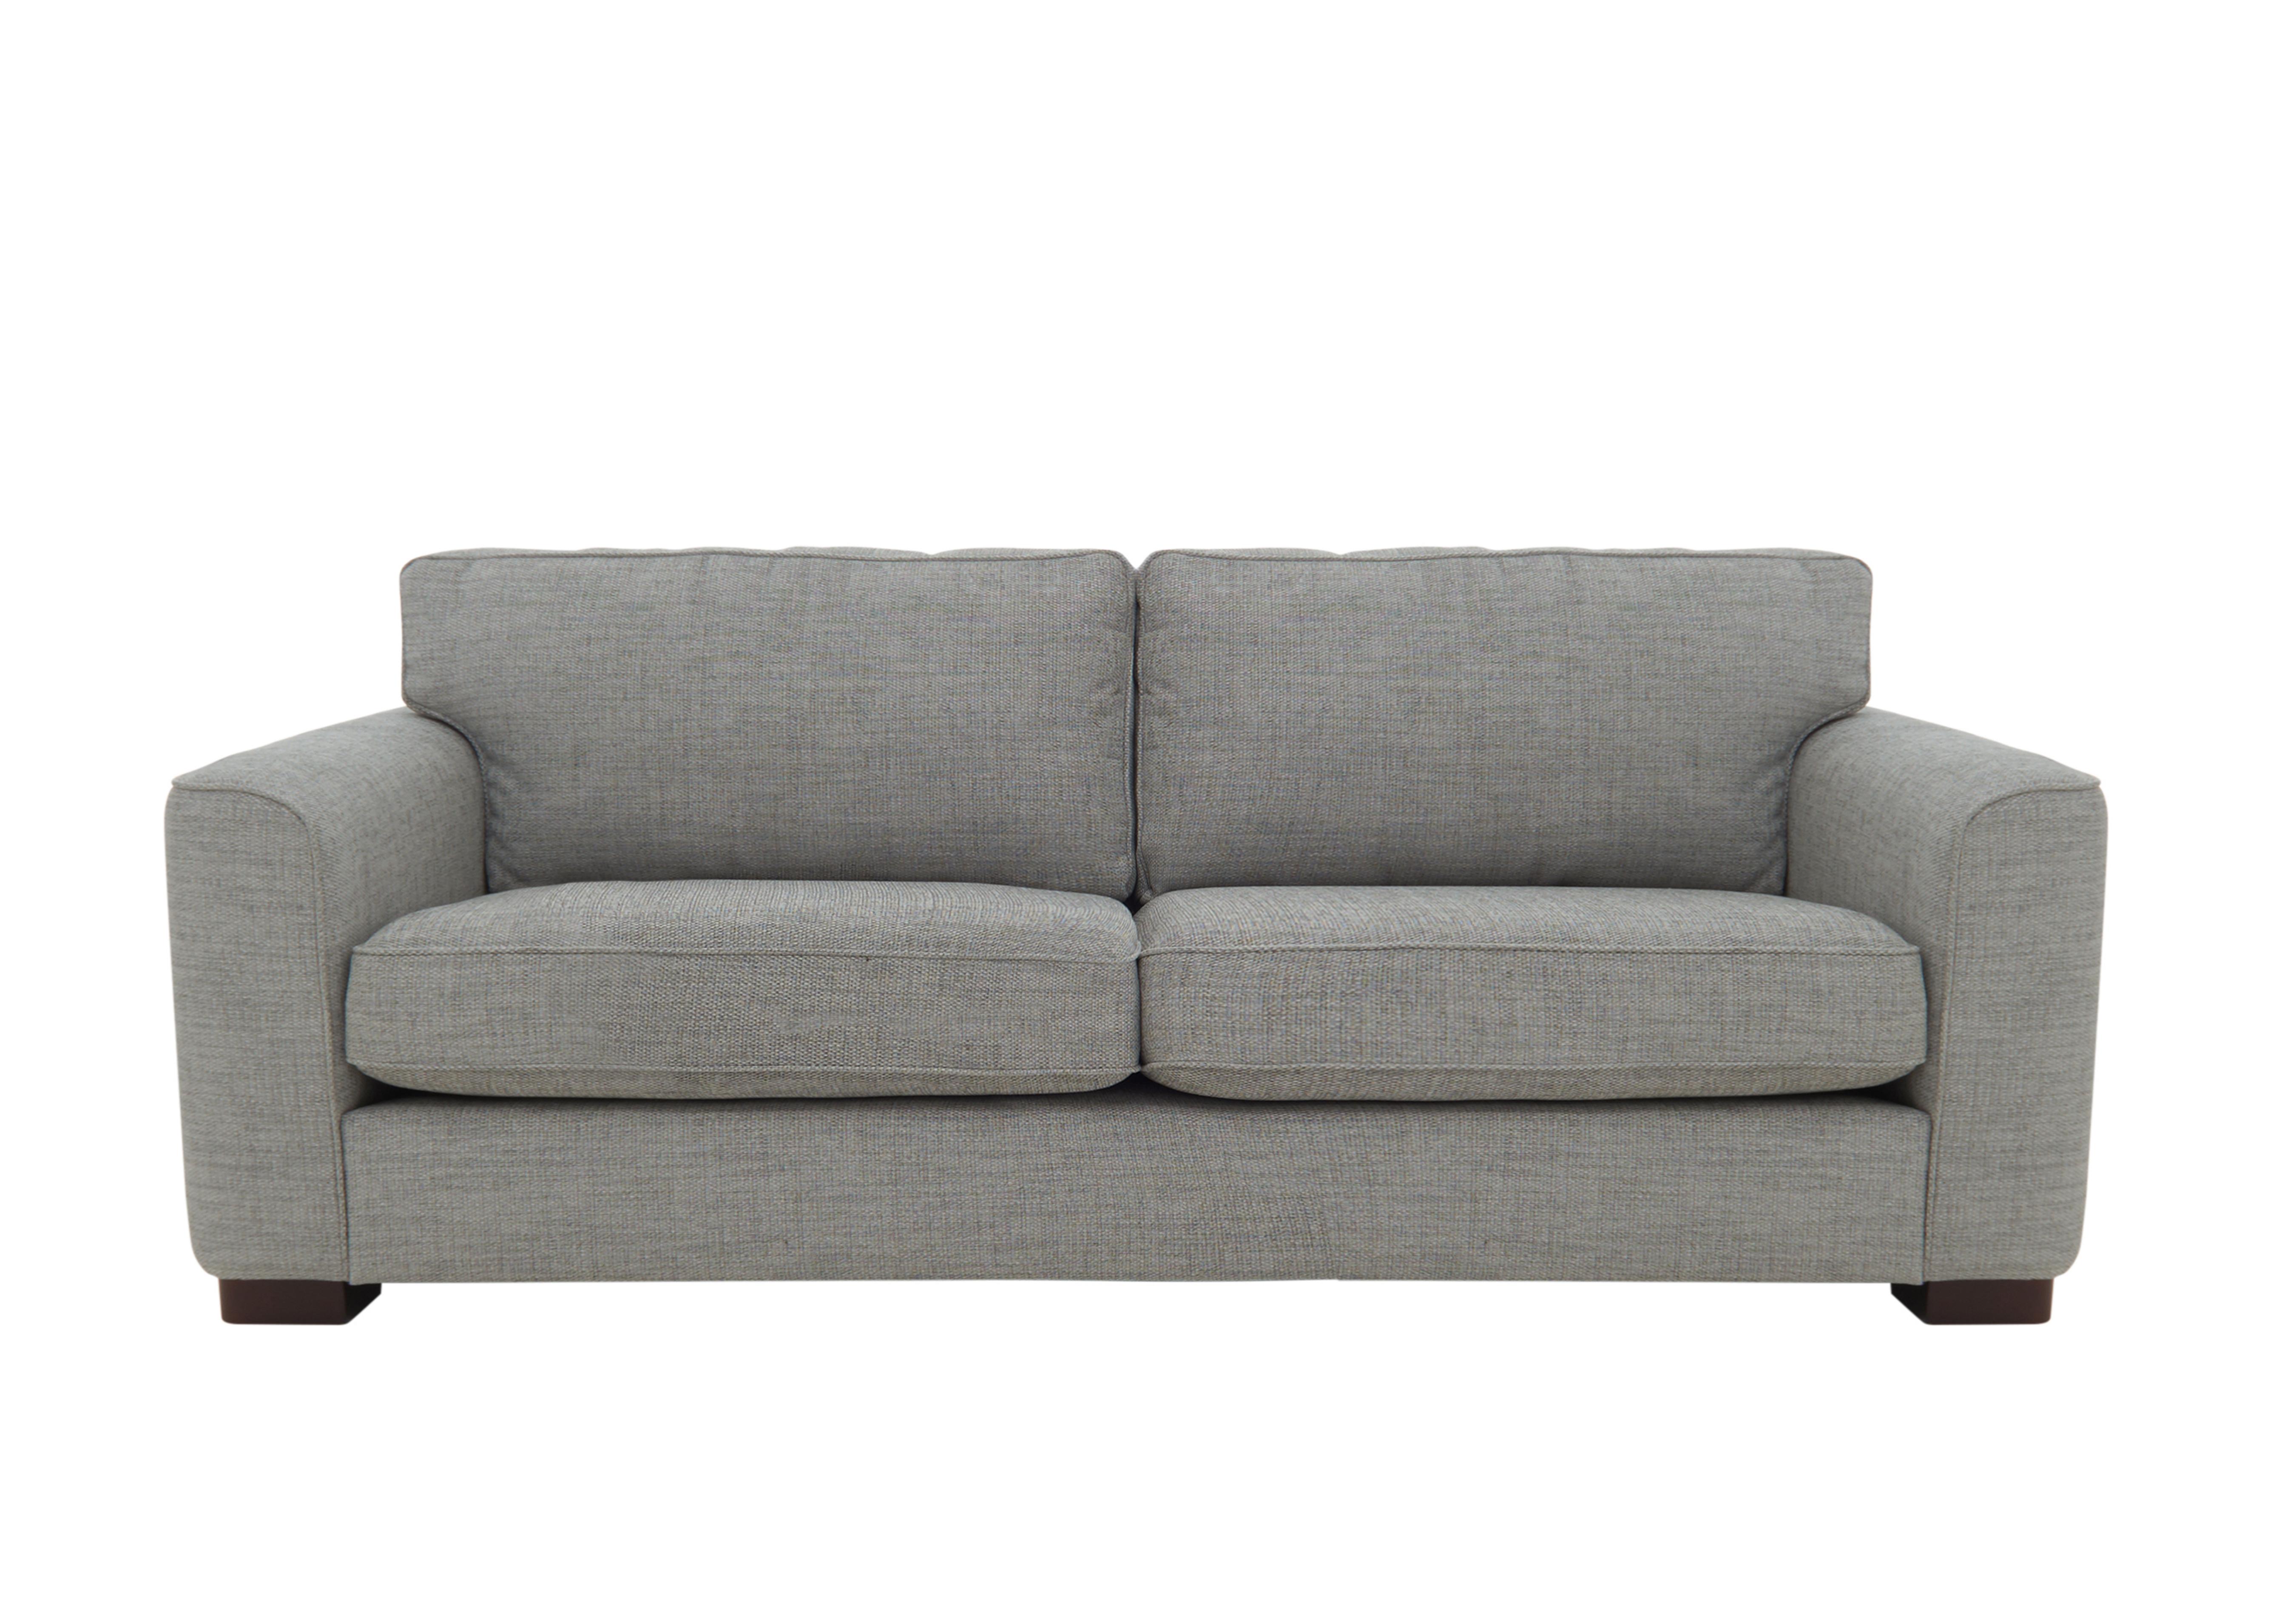 Elora 4 Seater Fabric Sofa in Kento 301 Warm Grey Dbf on Furniture Village